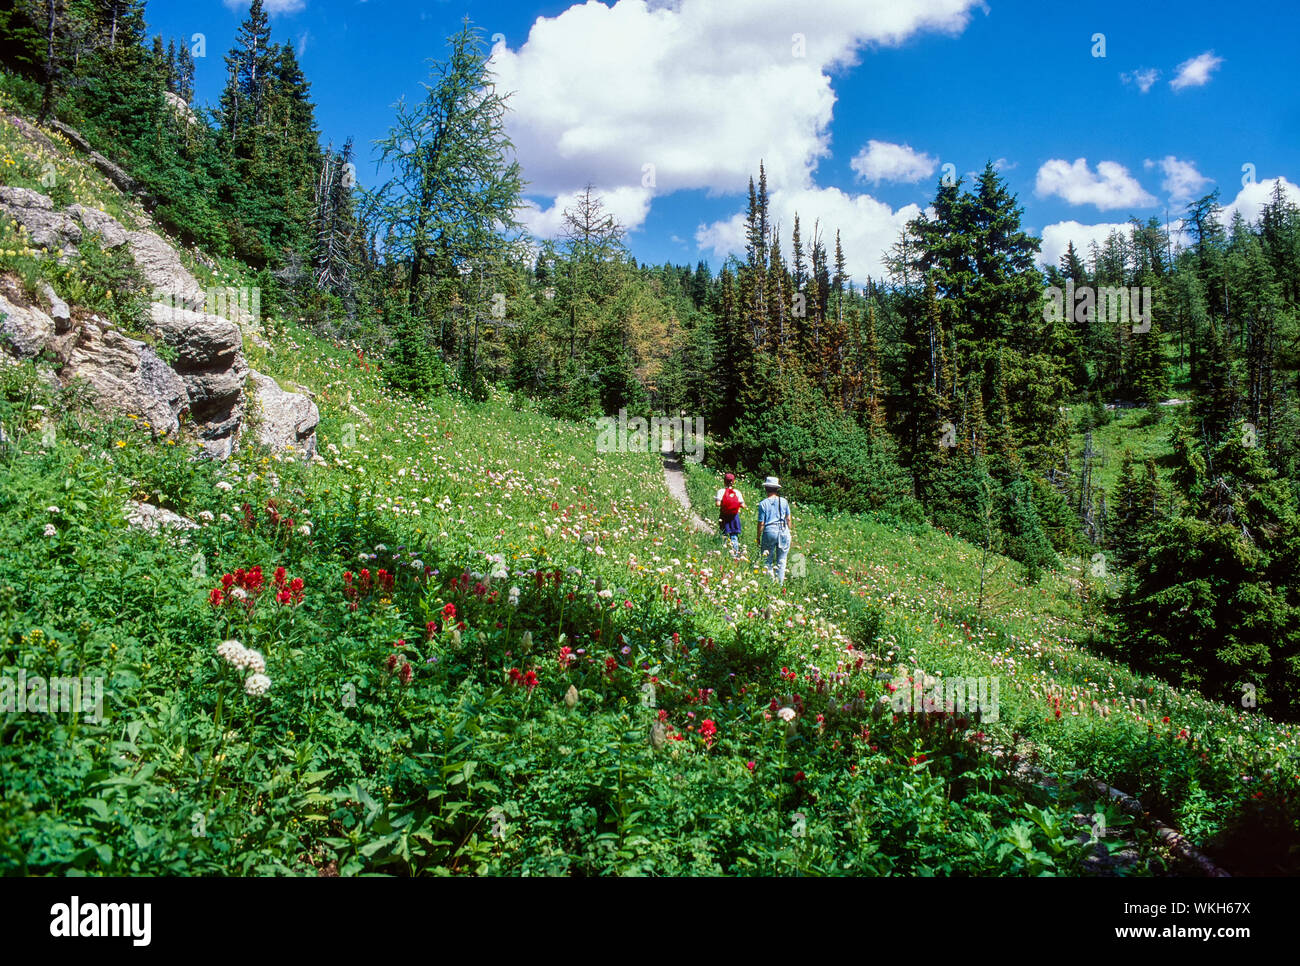 Randonneurs sur le sentier dans la région de flower meadow, Mt. Rivière Assiniboine Provincial Park, British Columbia, Canada Banque D'Images